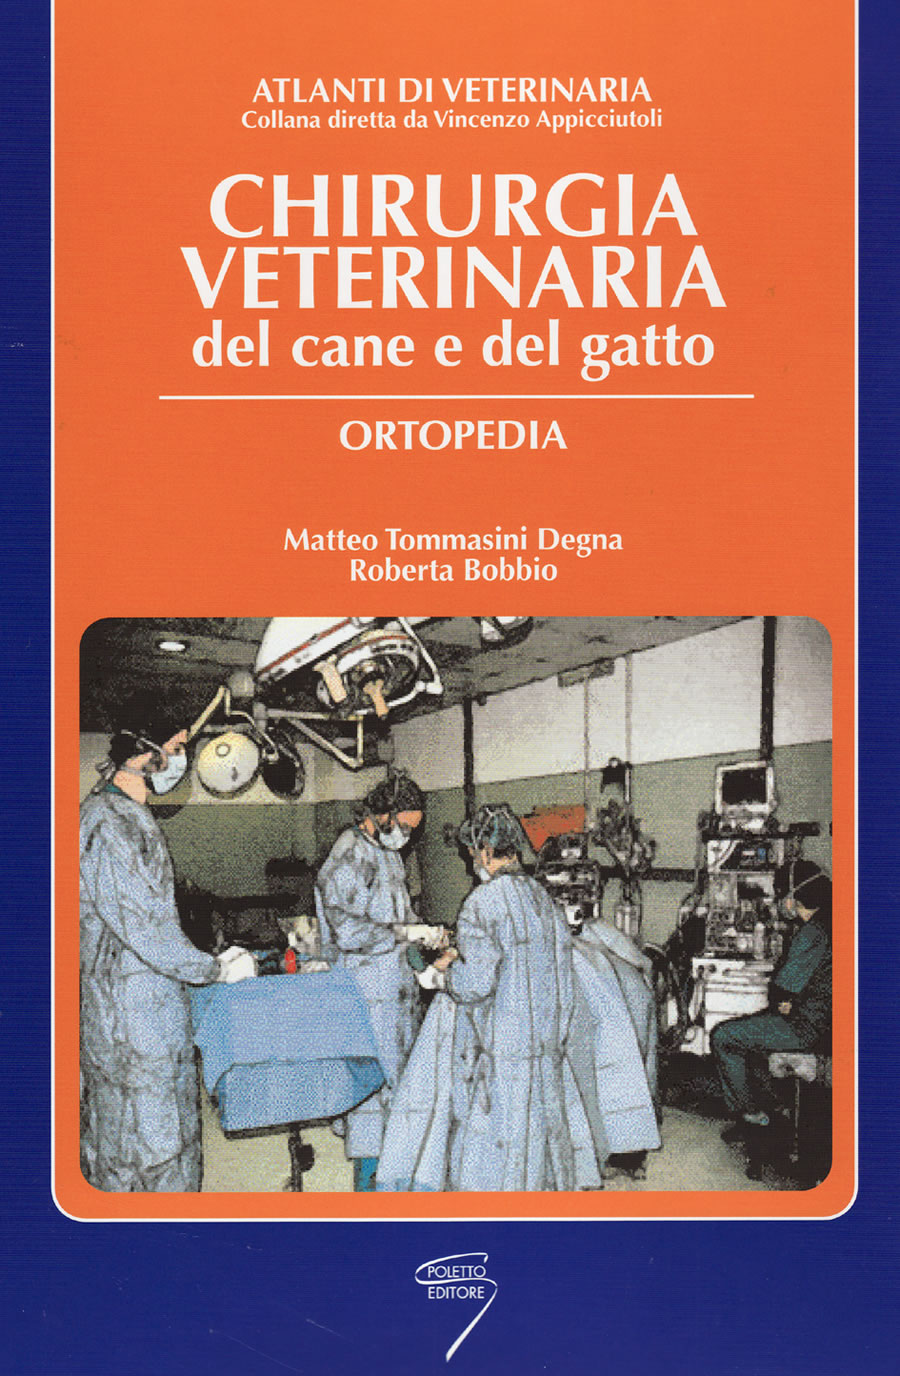 Chirurgia veterinaria del cane e del gatto - Ortopedia [Atlanti di veterinaria]